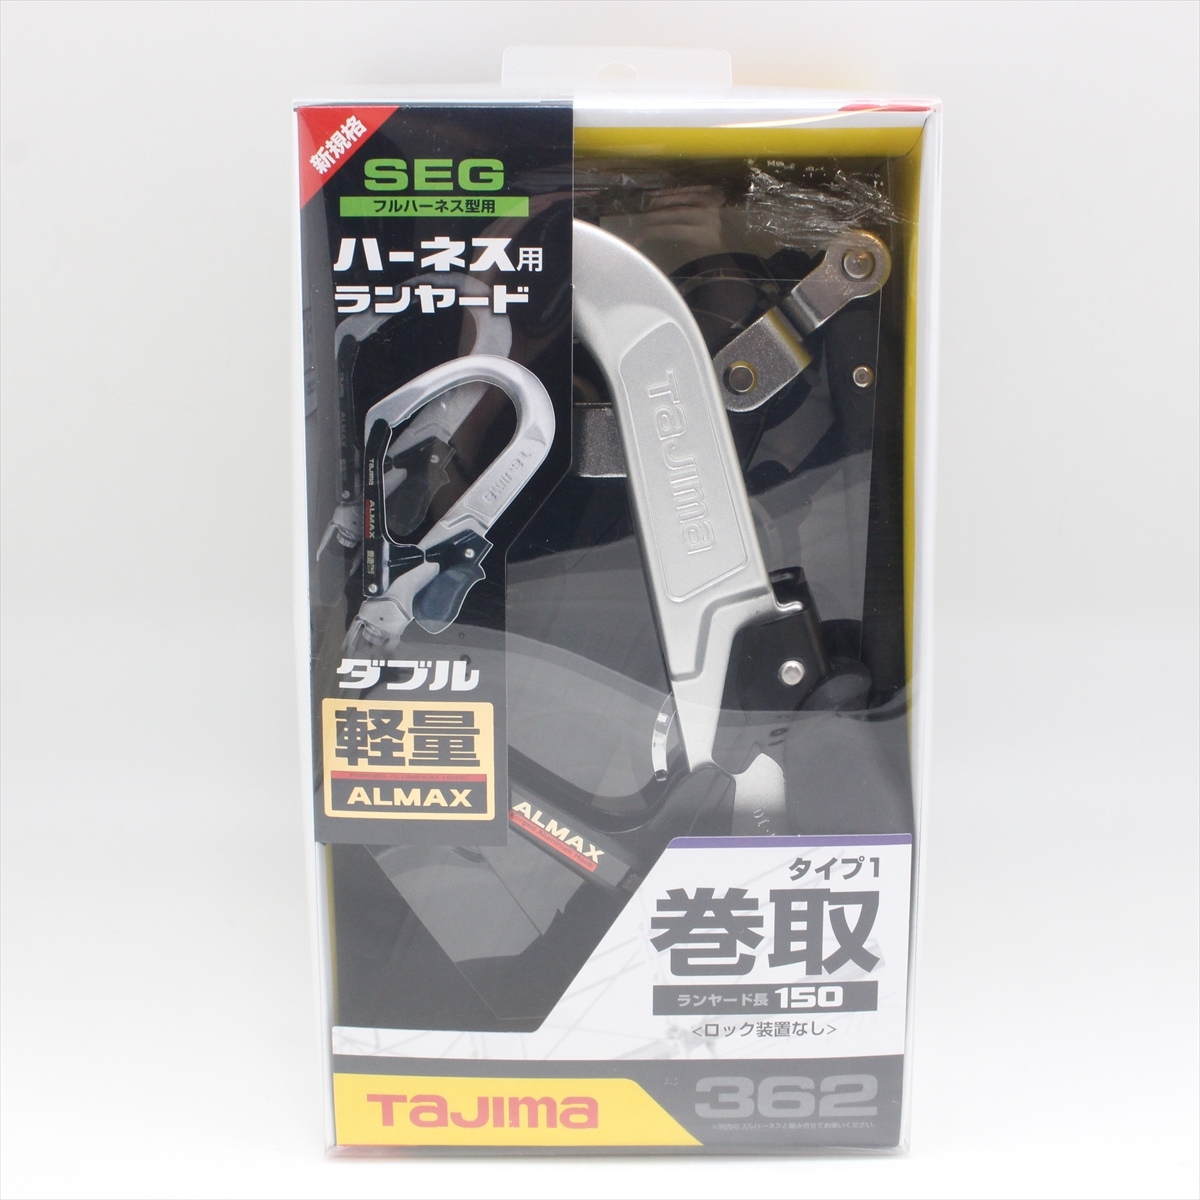 TAJIMA タジマ 新規格 SEG ハーネス用ランヤード ER150 ダブル L6